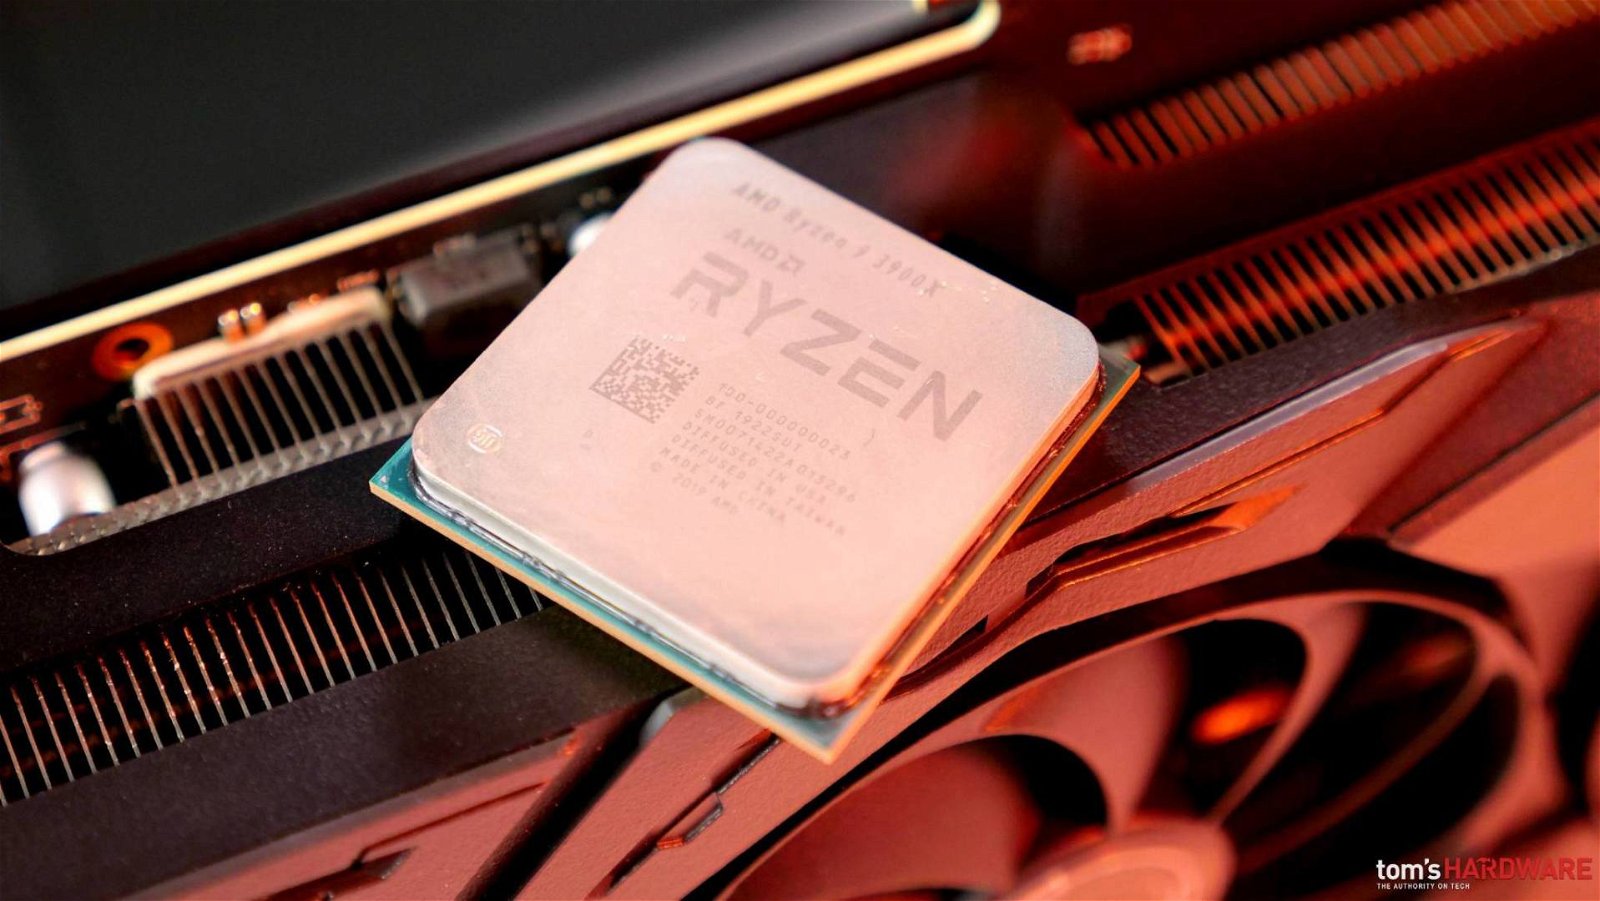 Immagine di Ryzen 3000 e Radeon RX 5700, dove acquistarli e a che prezzi